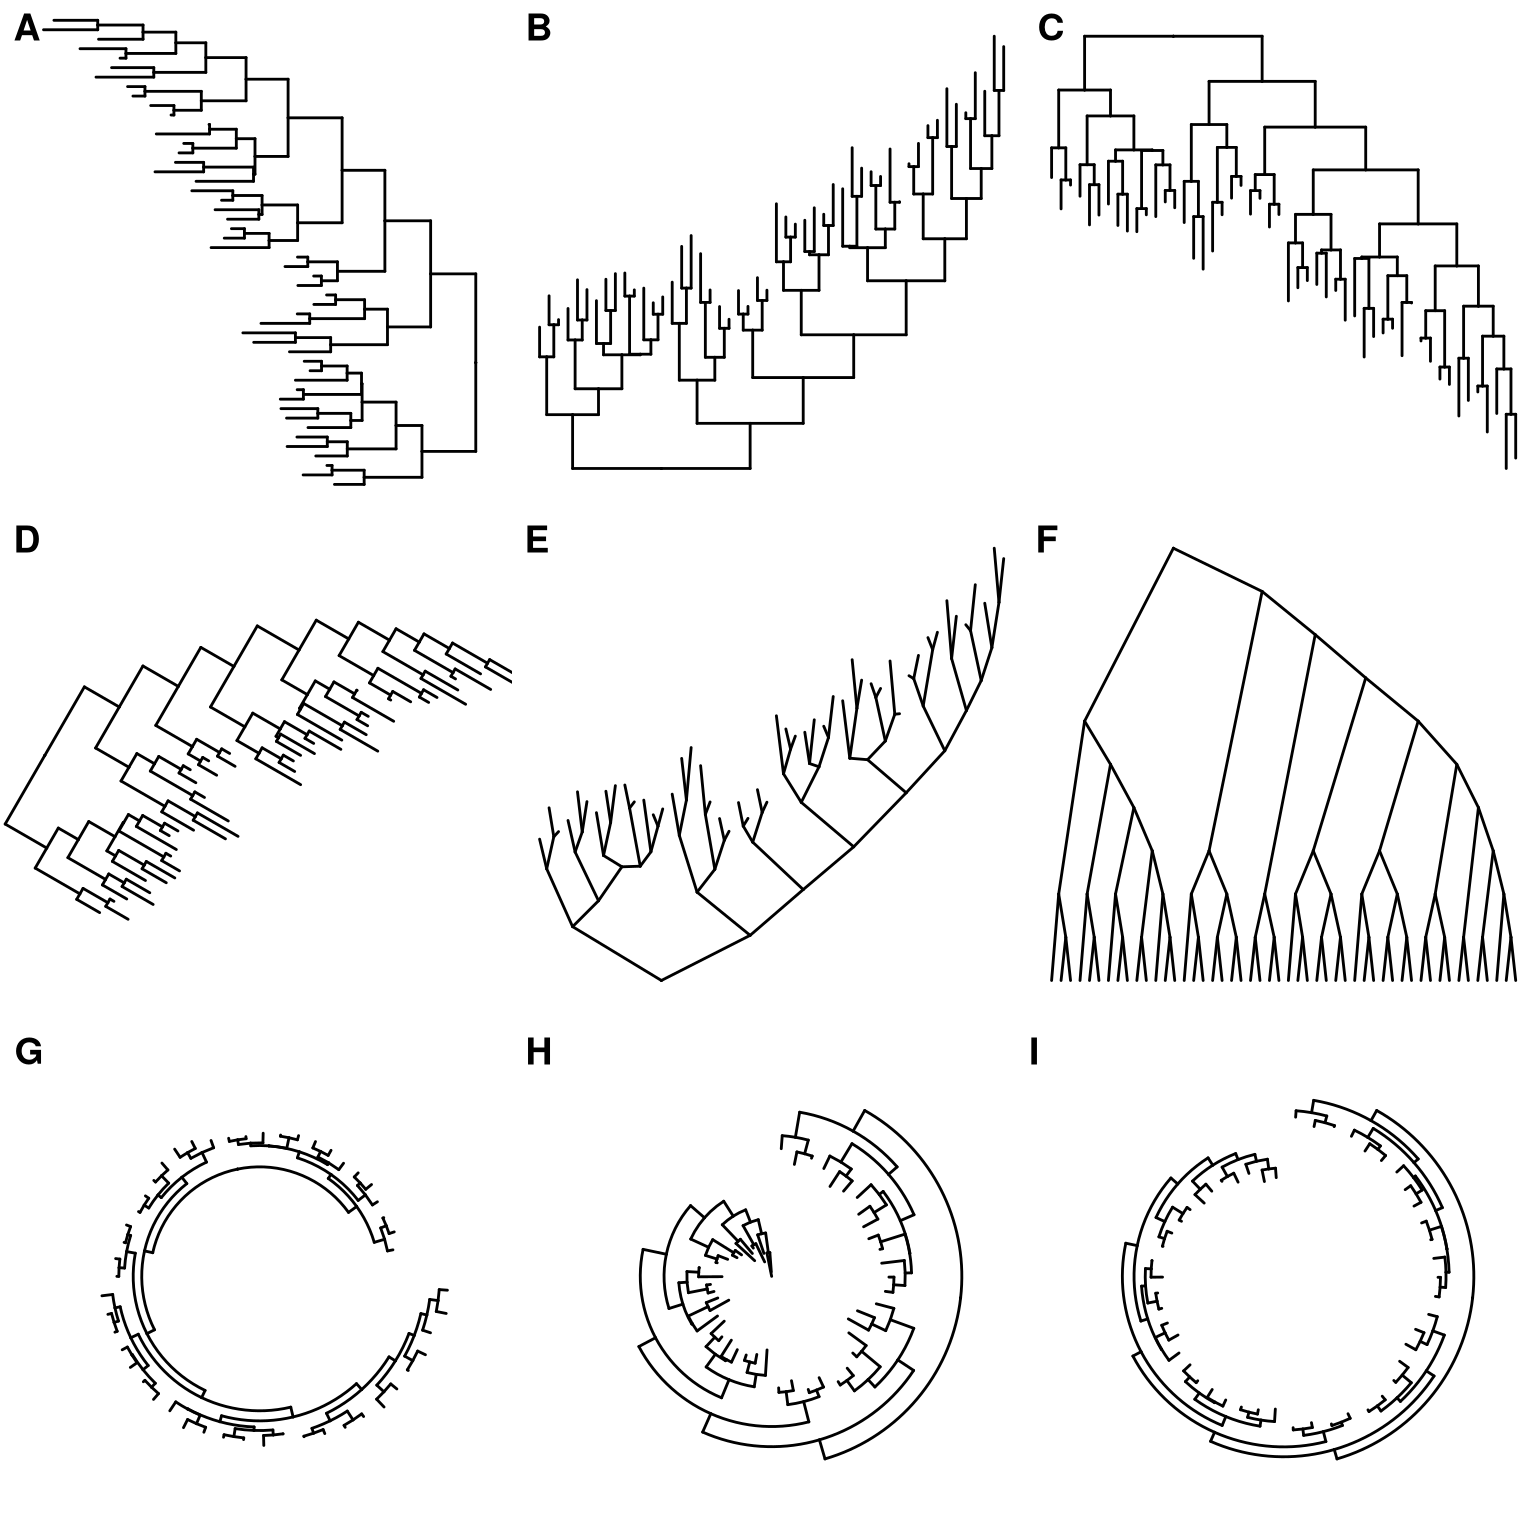 Phylogenetic diagrams